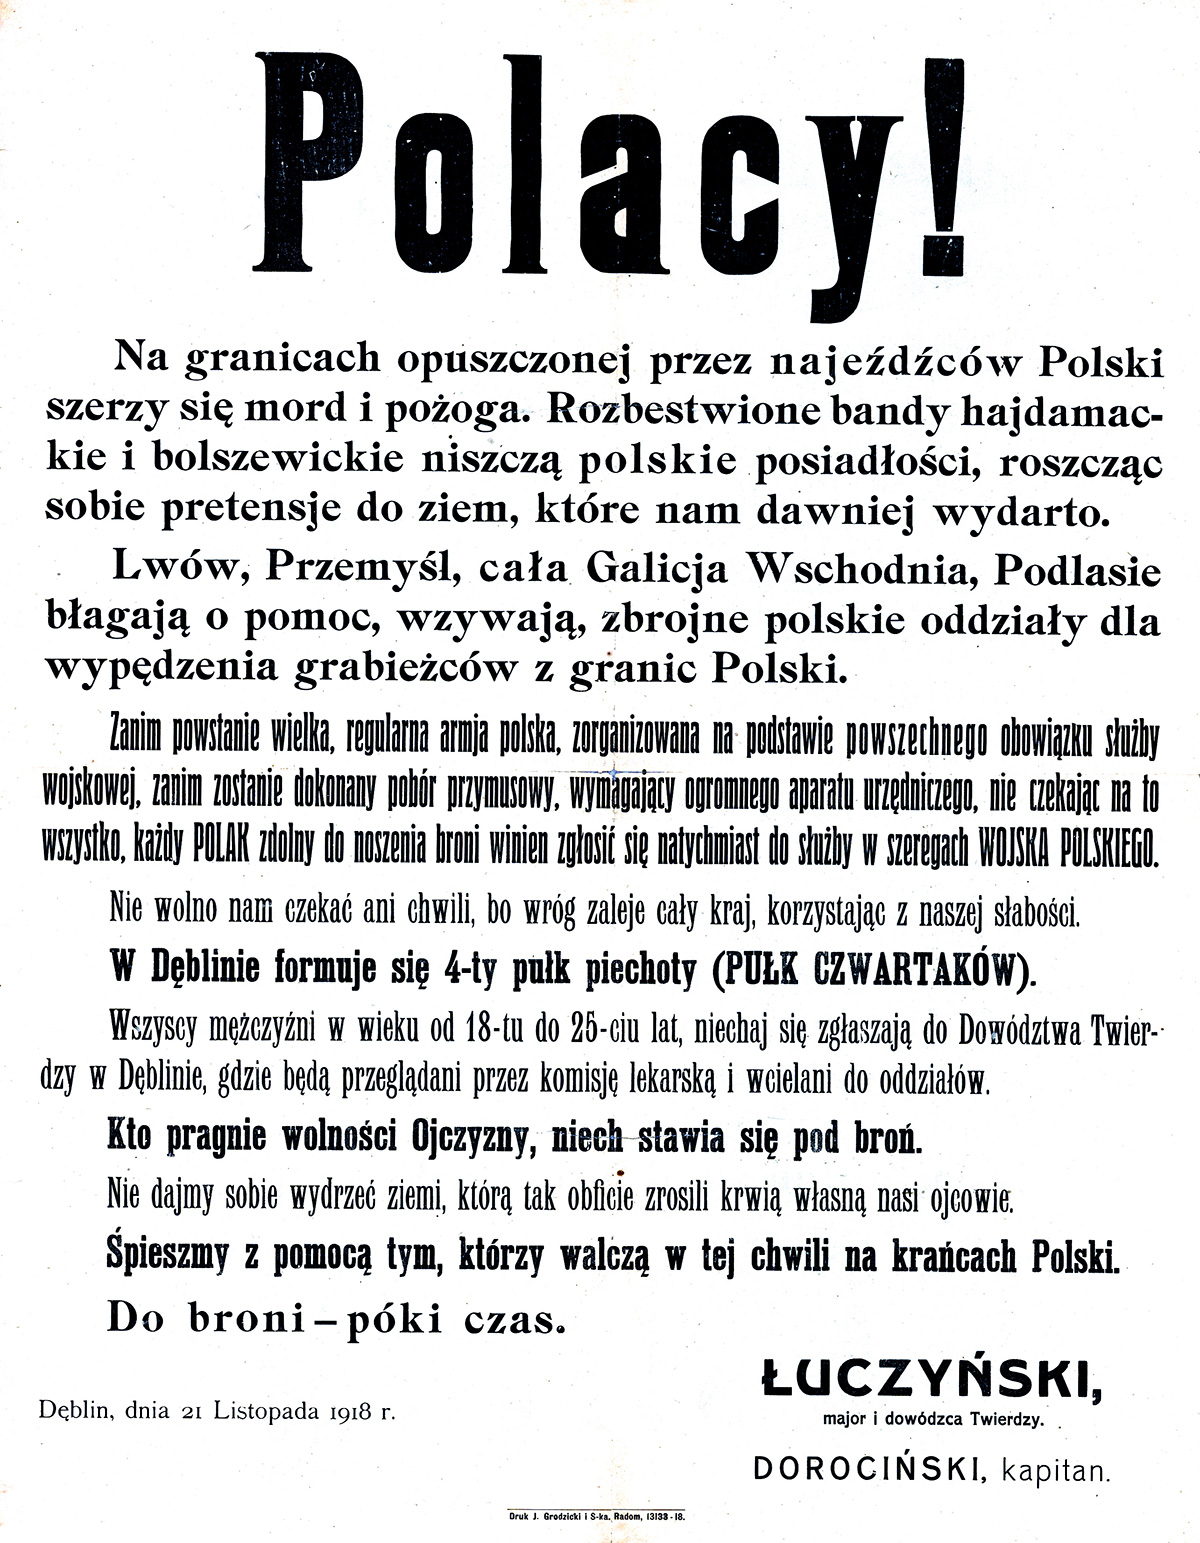 Odezwa wzywająca do walki w obronie Galicji Wschodniej i Podlasia z 21 listopada 1918 r. Źródło: Narodowe Archiwum Cyfrowe